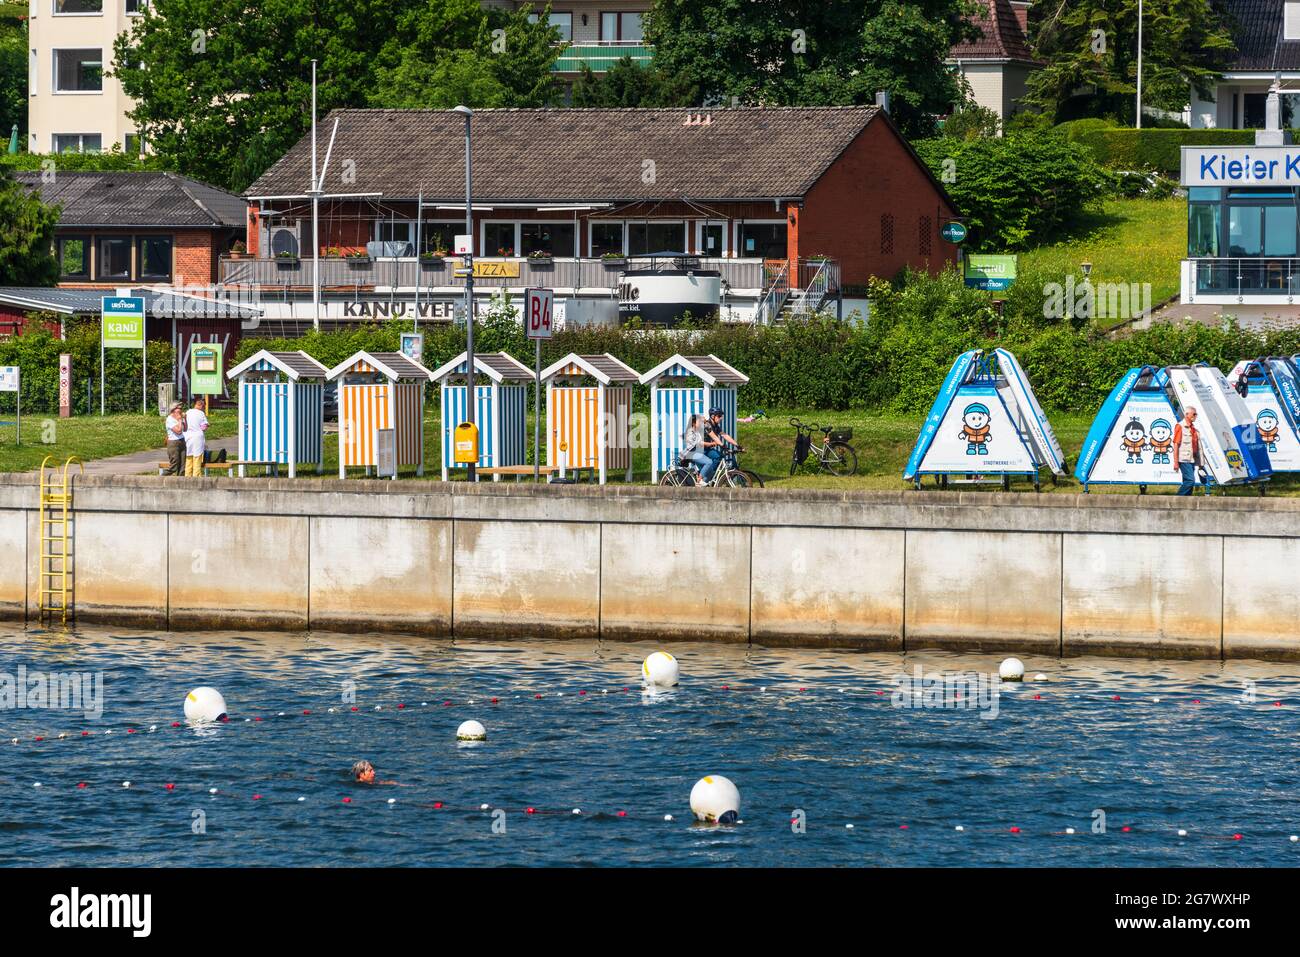 Stadtansicht Kieler Hafen mit zwei Kreuzfahrtschiffen und der Norwegenfähre der Color Line an ihren Liegeplätzen in der Innenstadt Stock Photo